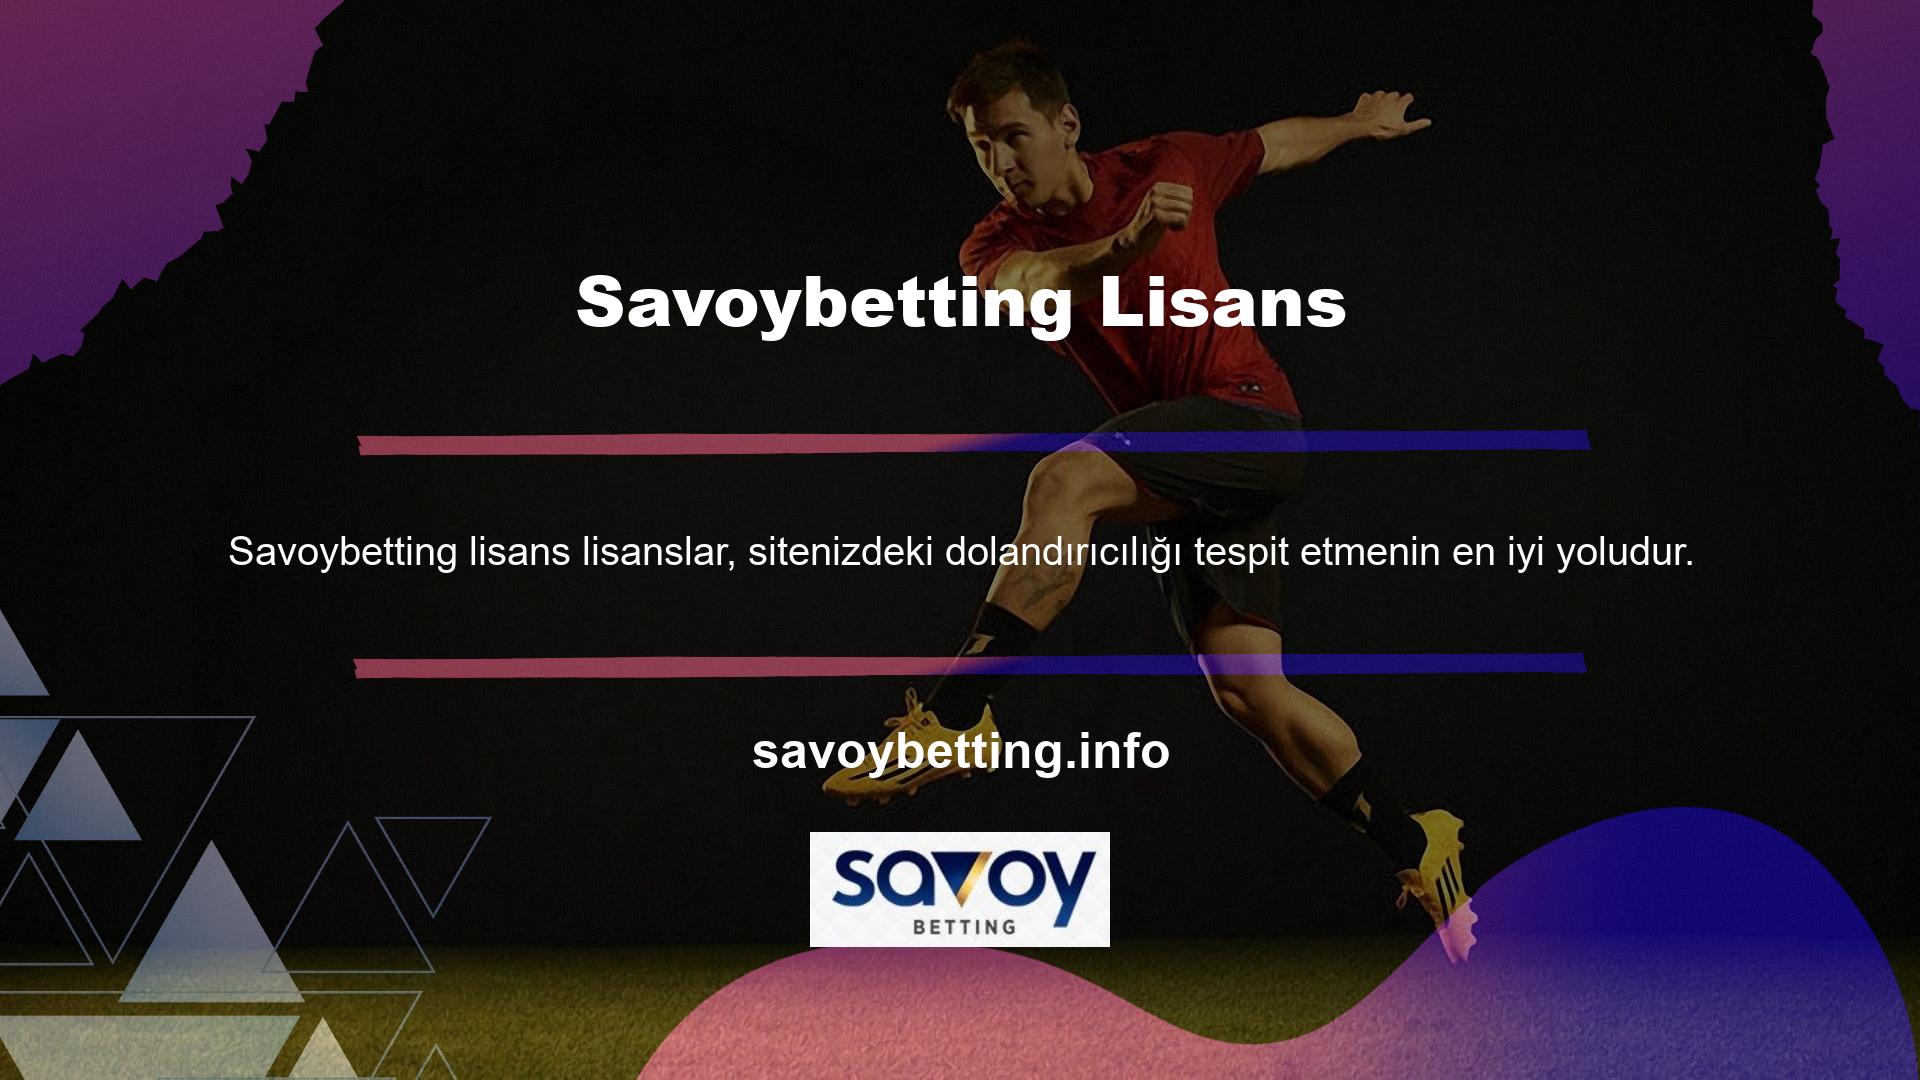 Ayrıca Savoybetting tüm yeni kullanıcılara birçok reklam fırsatı sunmaktadır